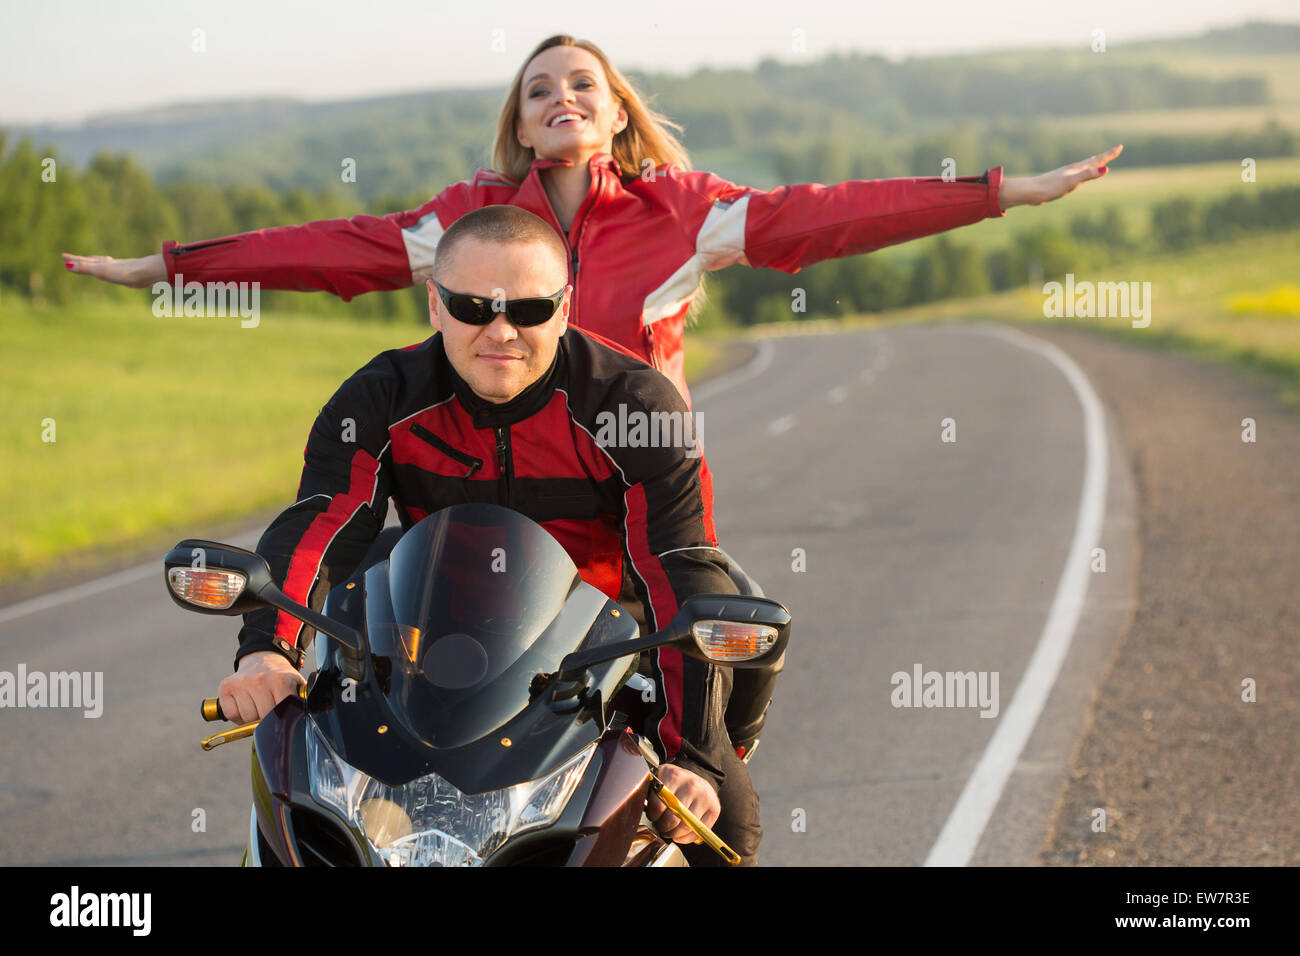 Biker-Mann und Frau auf einem Motorrad sitzen Stockfotografie - Alamy